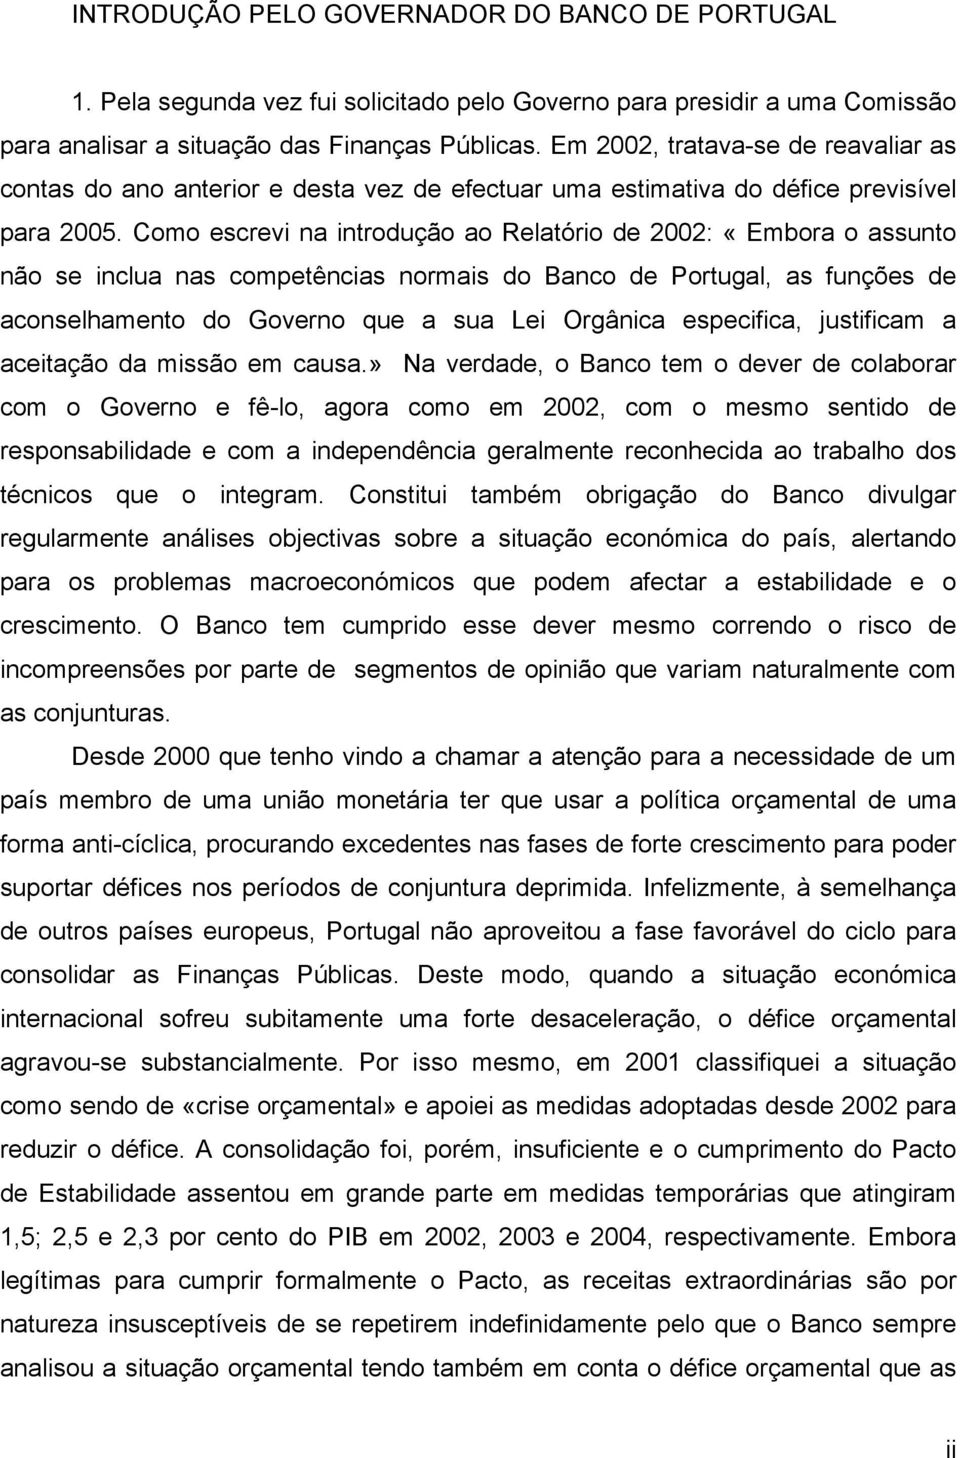 Como escrevi na introdução ao Relatório de 2002: «Embora o assunto não se inclua nas competências normais do Banco de Portugal, as funções de aconselhamento do Governo que a sua Lei Orgânica